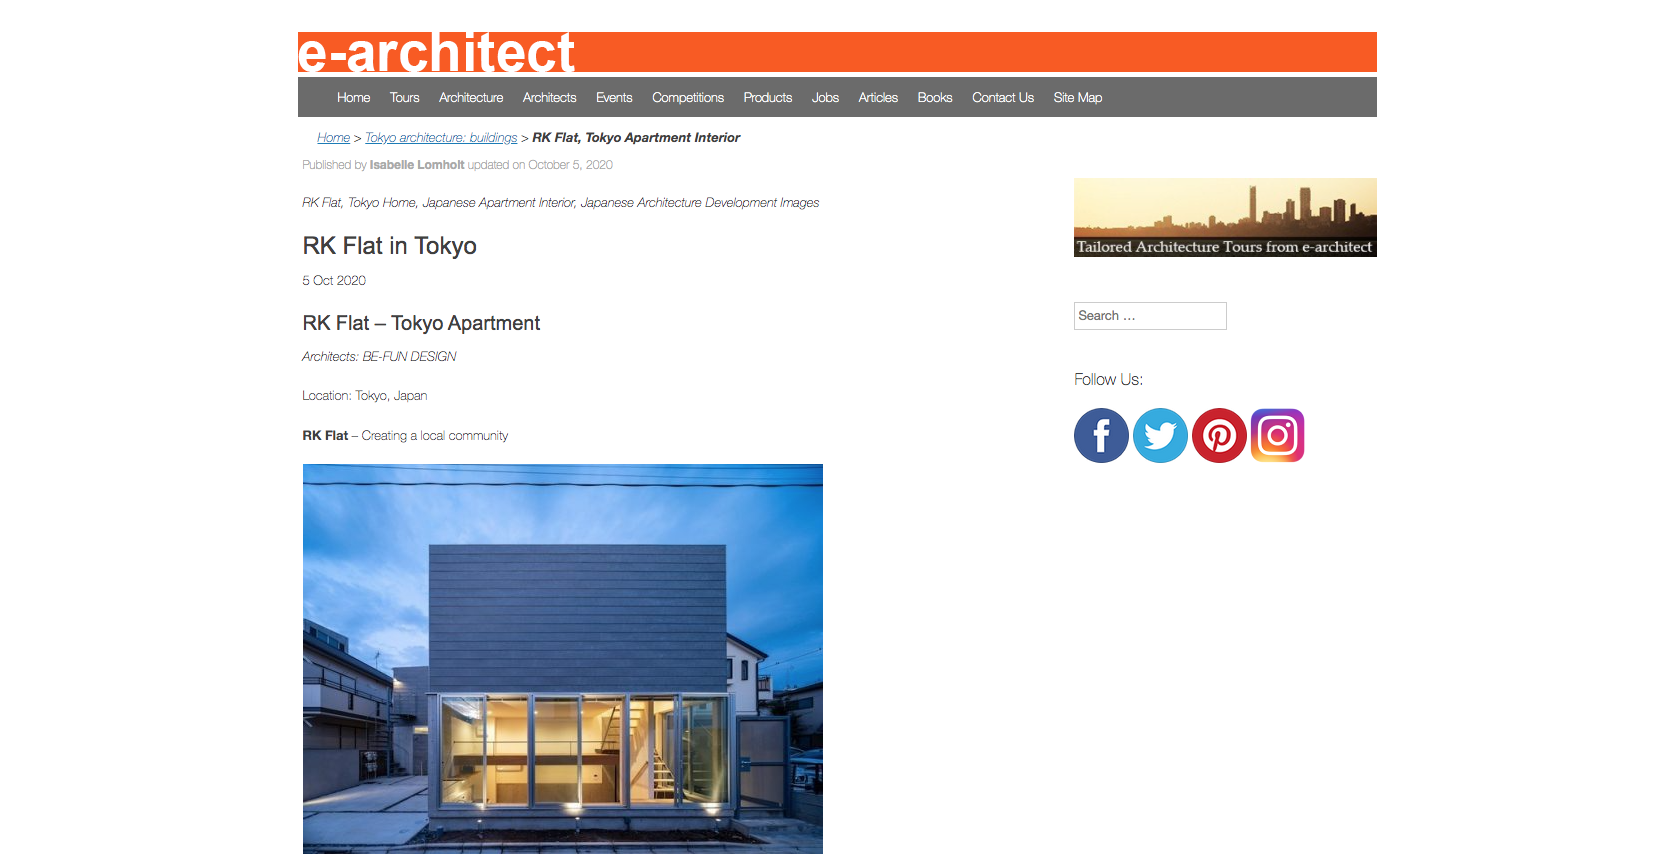 e-architect_RKFLAT